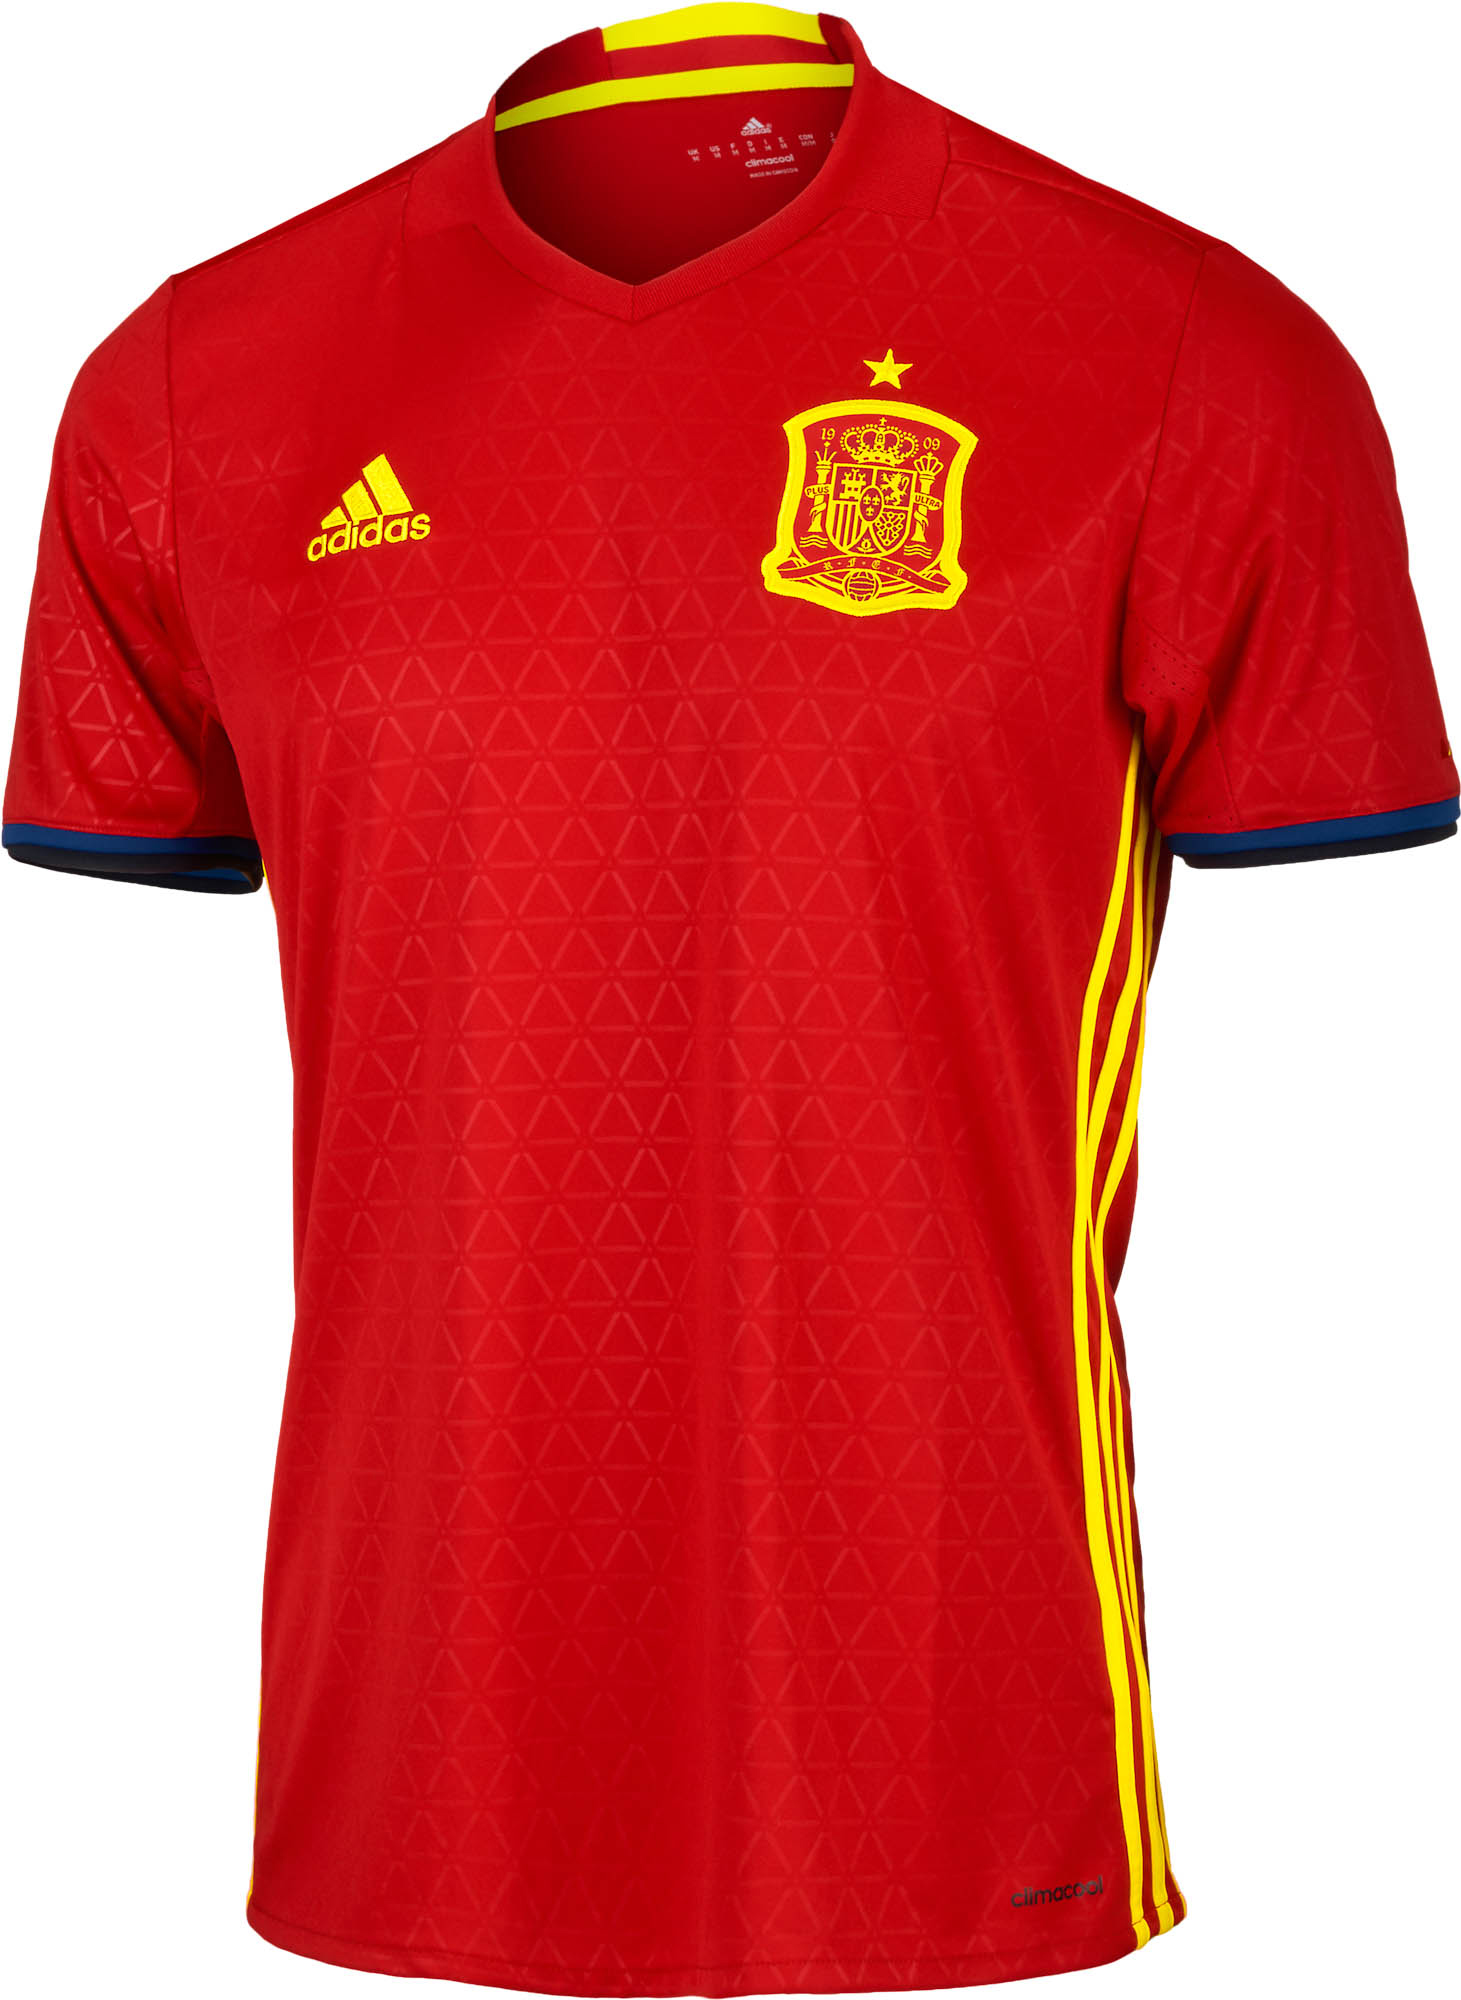 Bigote ignorar encender un fuego adidas Spain Home Jersey - 2016 Spain Soccer Jerseys